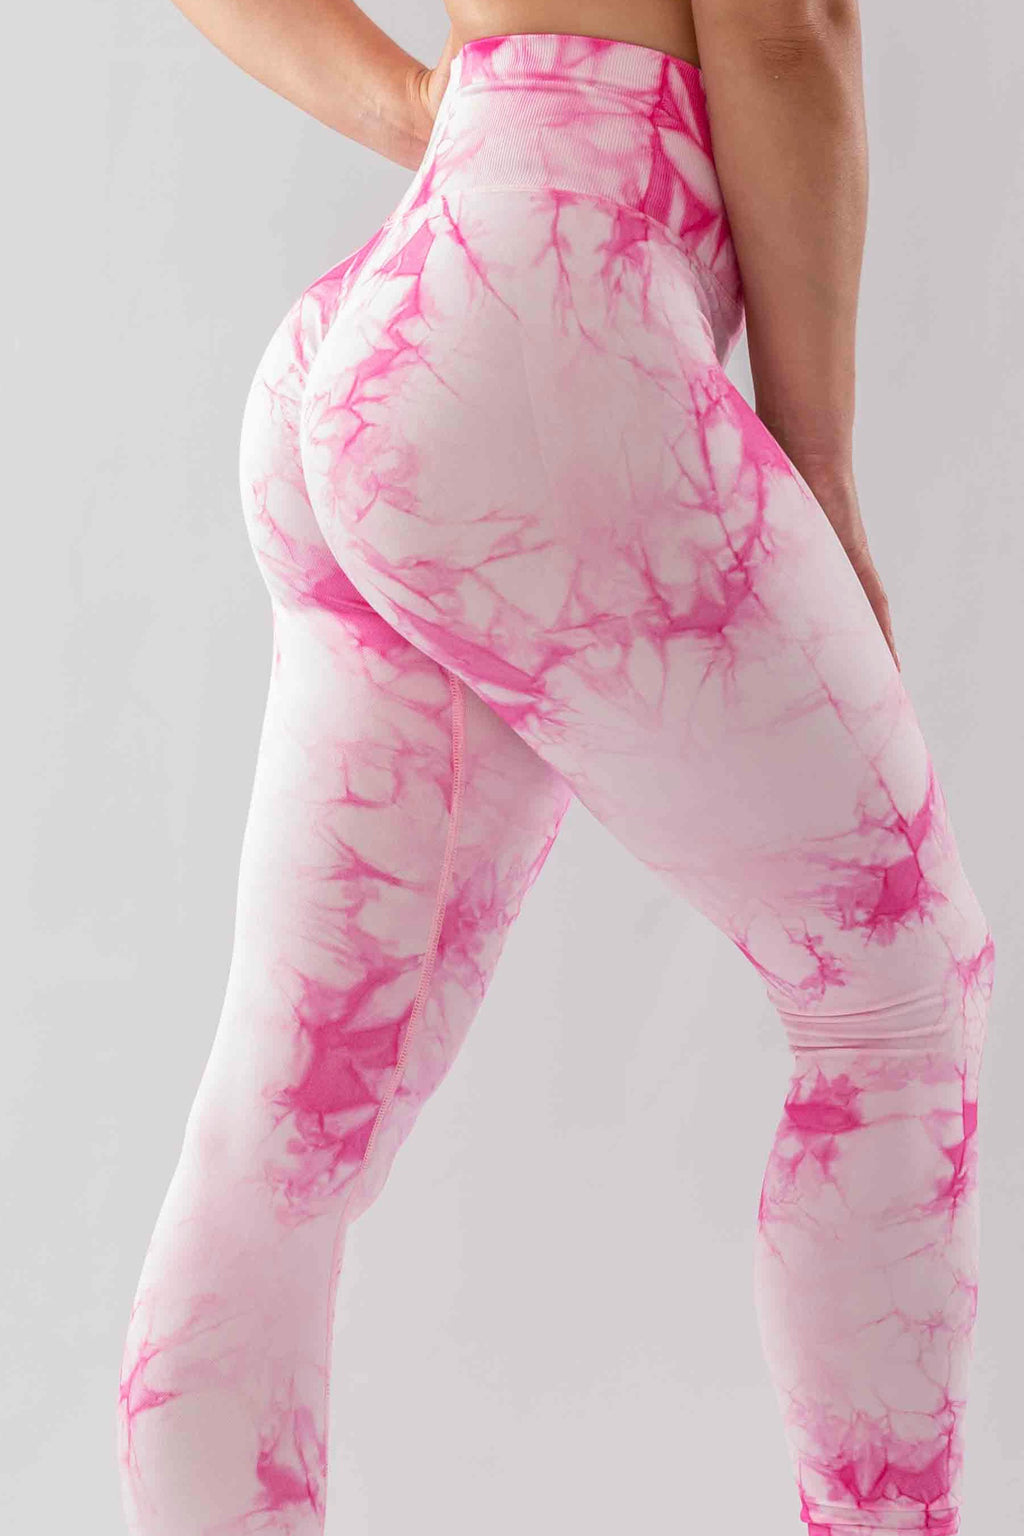 Ladies Cool Printed Leggings Speckled Pink - Key Engineering & Hygiene  Supplies Ltd